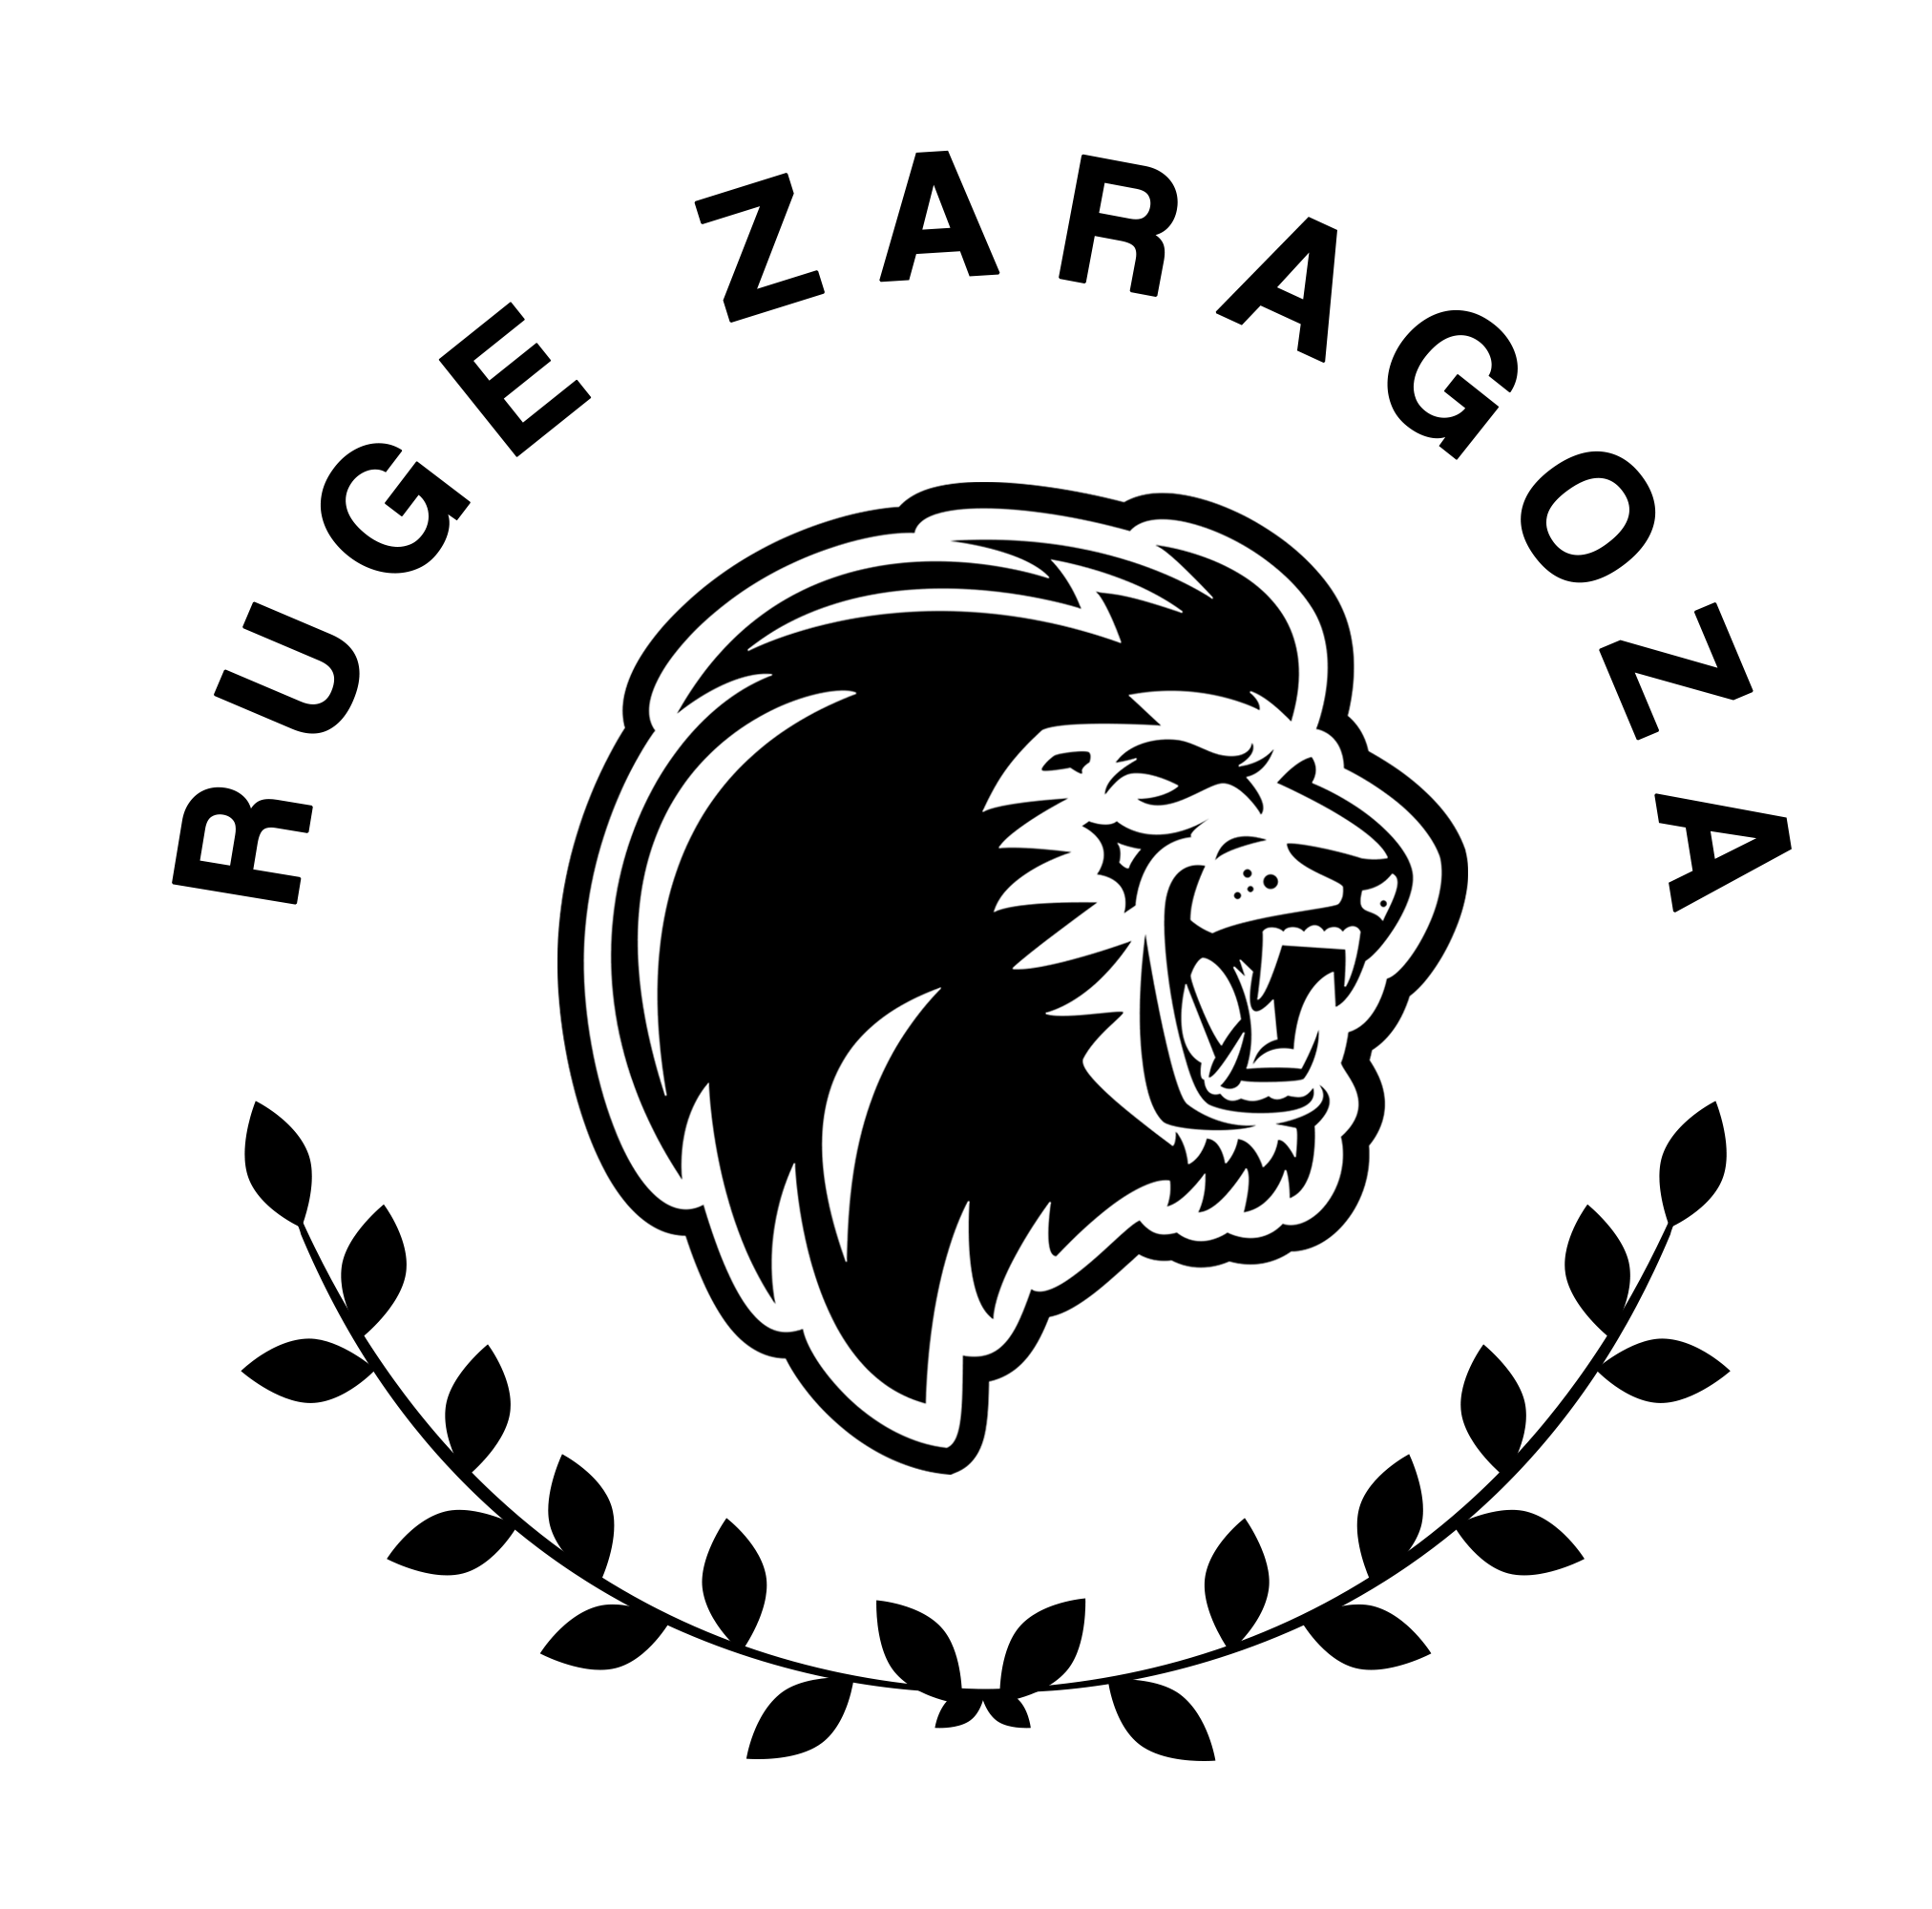 Ruge Zaragoza▪Camisetas unicas
Diseños de nuestra ciudad y equipo #Zaragoza 🦁
👕Camisetas
🏃‍♀️Sudaderas
🎒Accesorios
👇Visita y haz tus pedidos en nuestra web